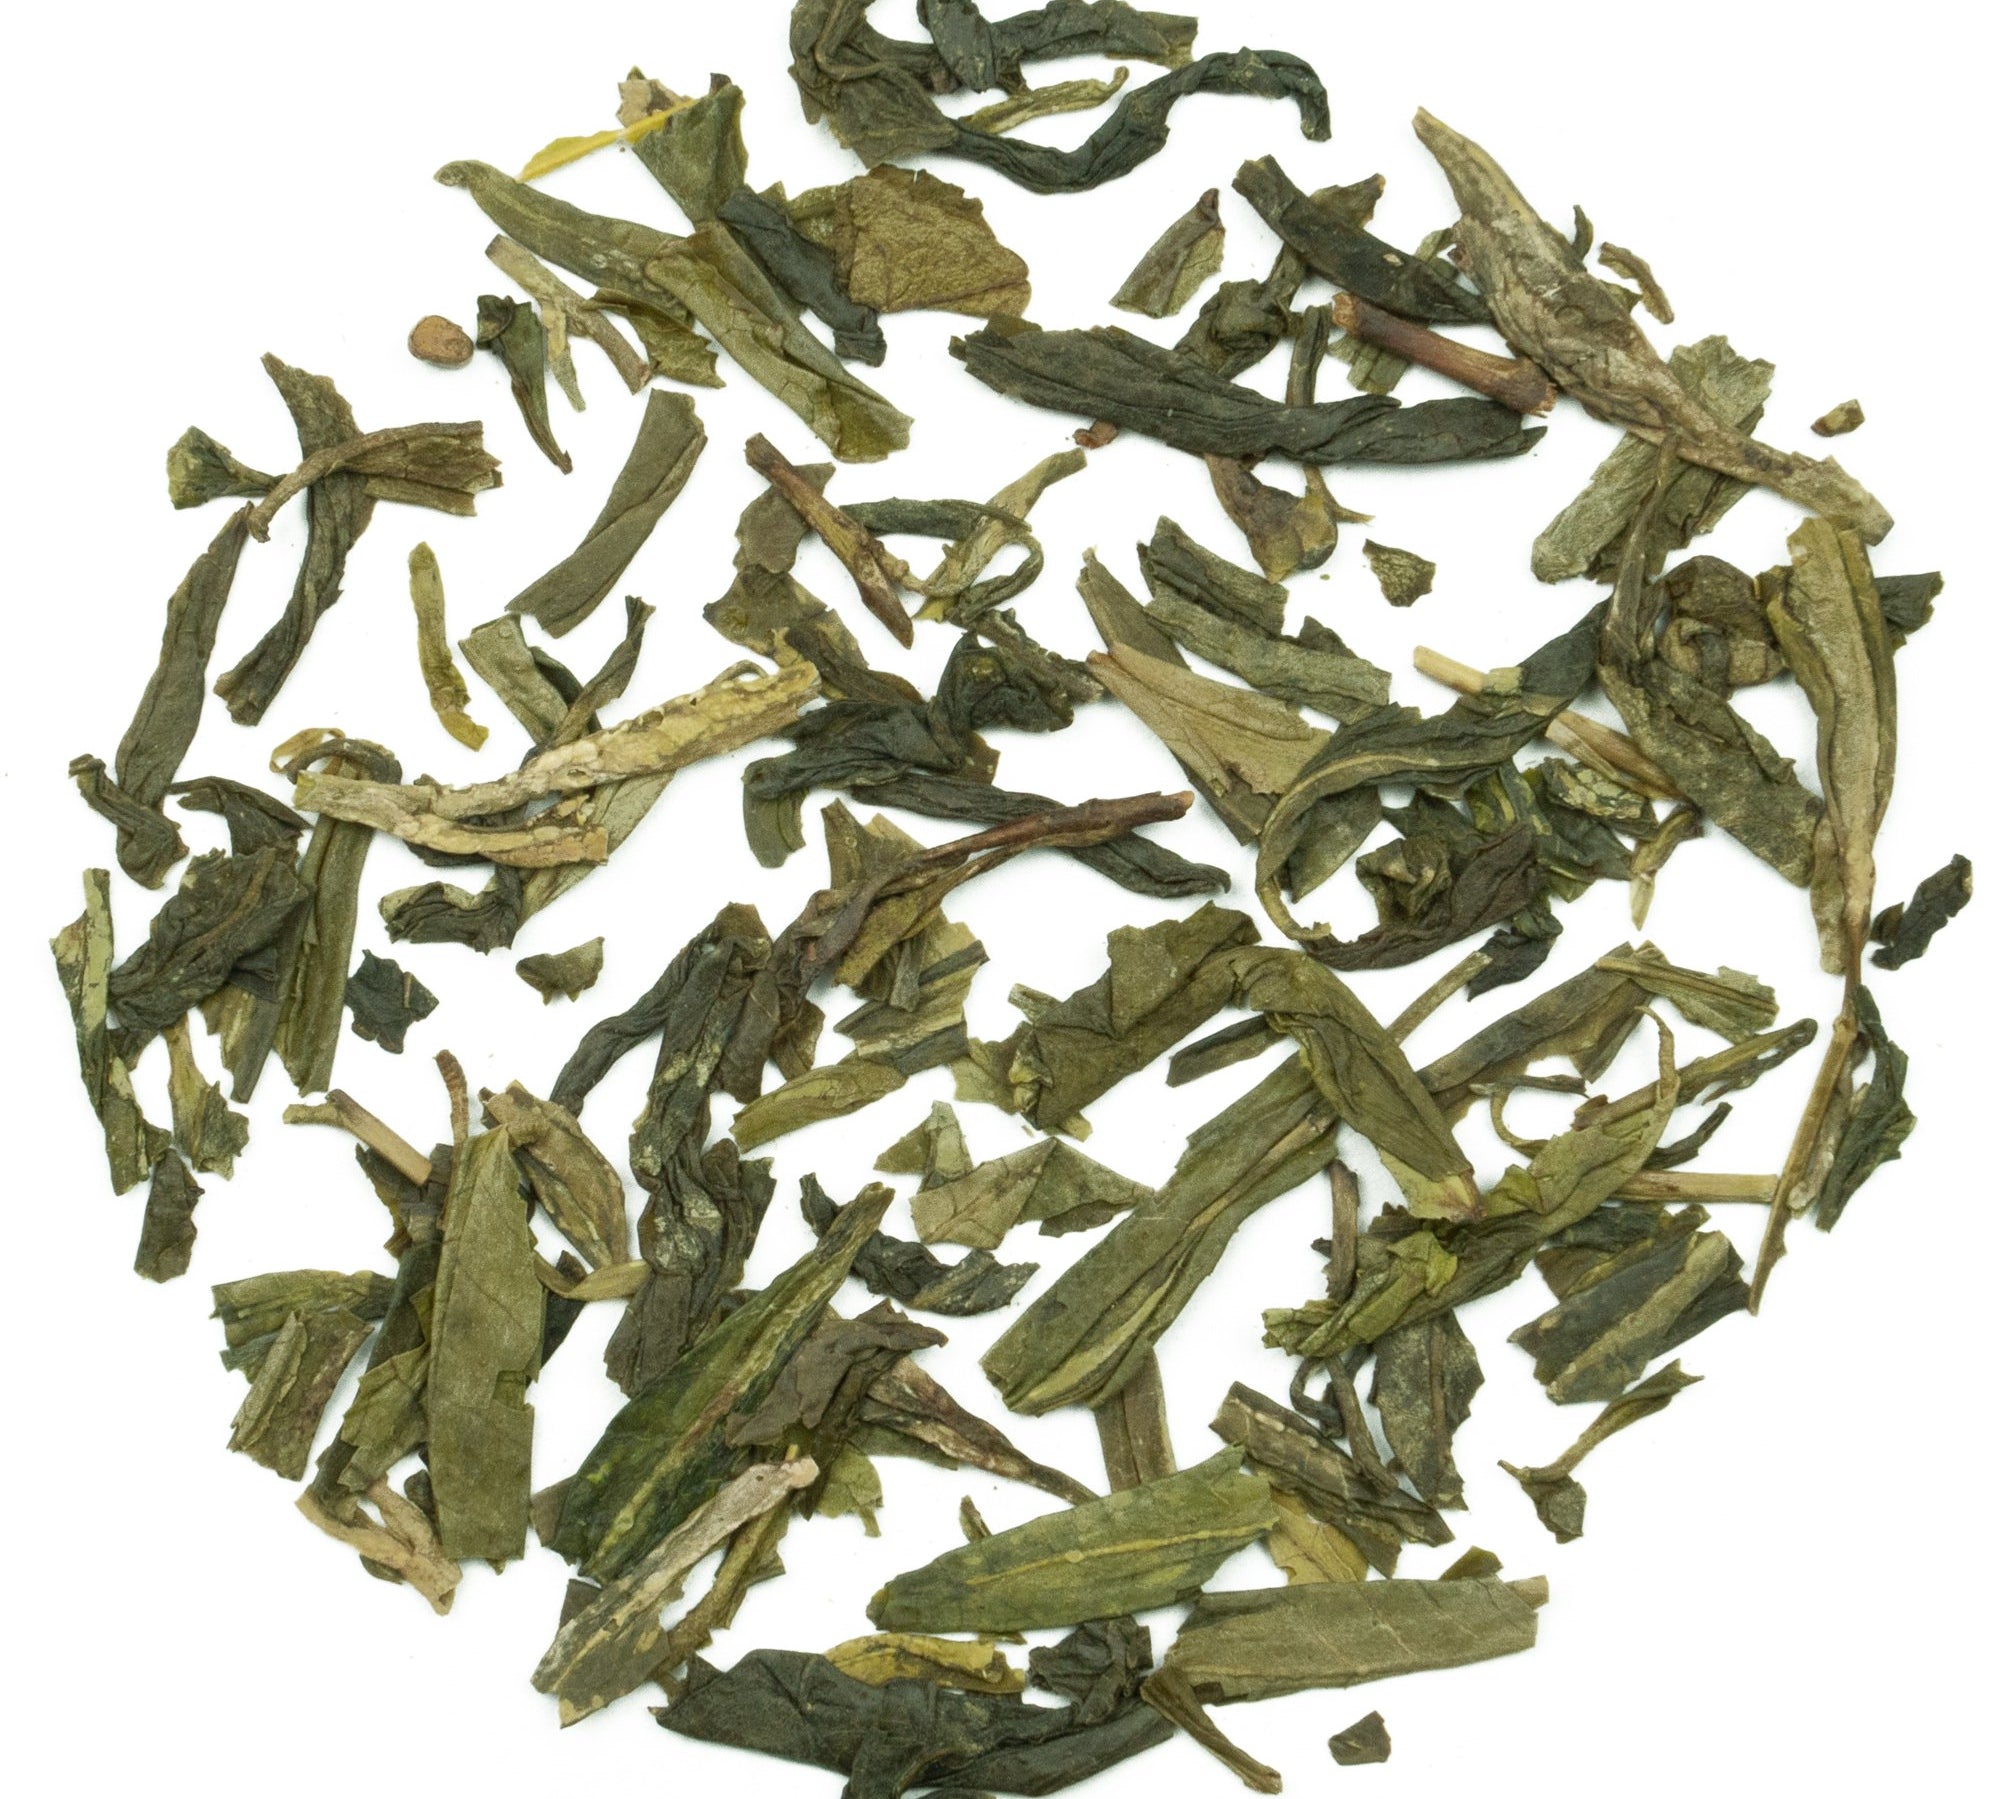 Grüner Tee China Lung Ching Superior Bio, Drachenbrunnentee, von den Hängen des Westsees, süssliche Note